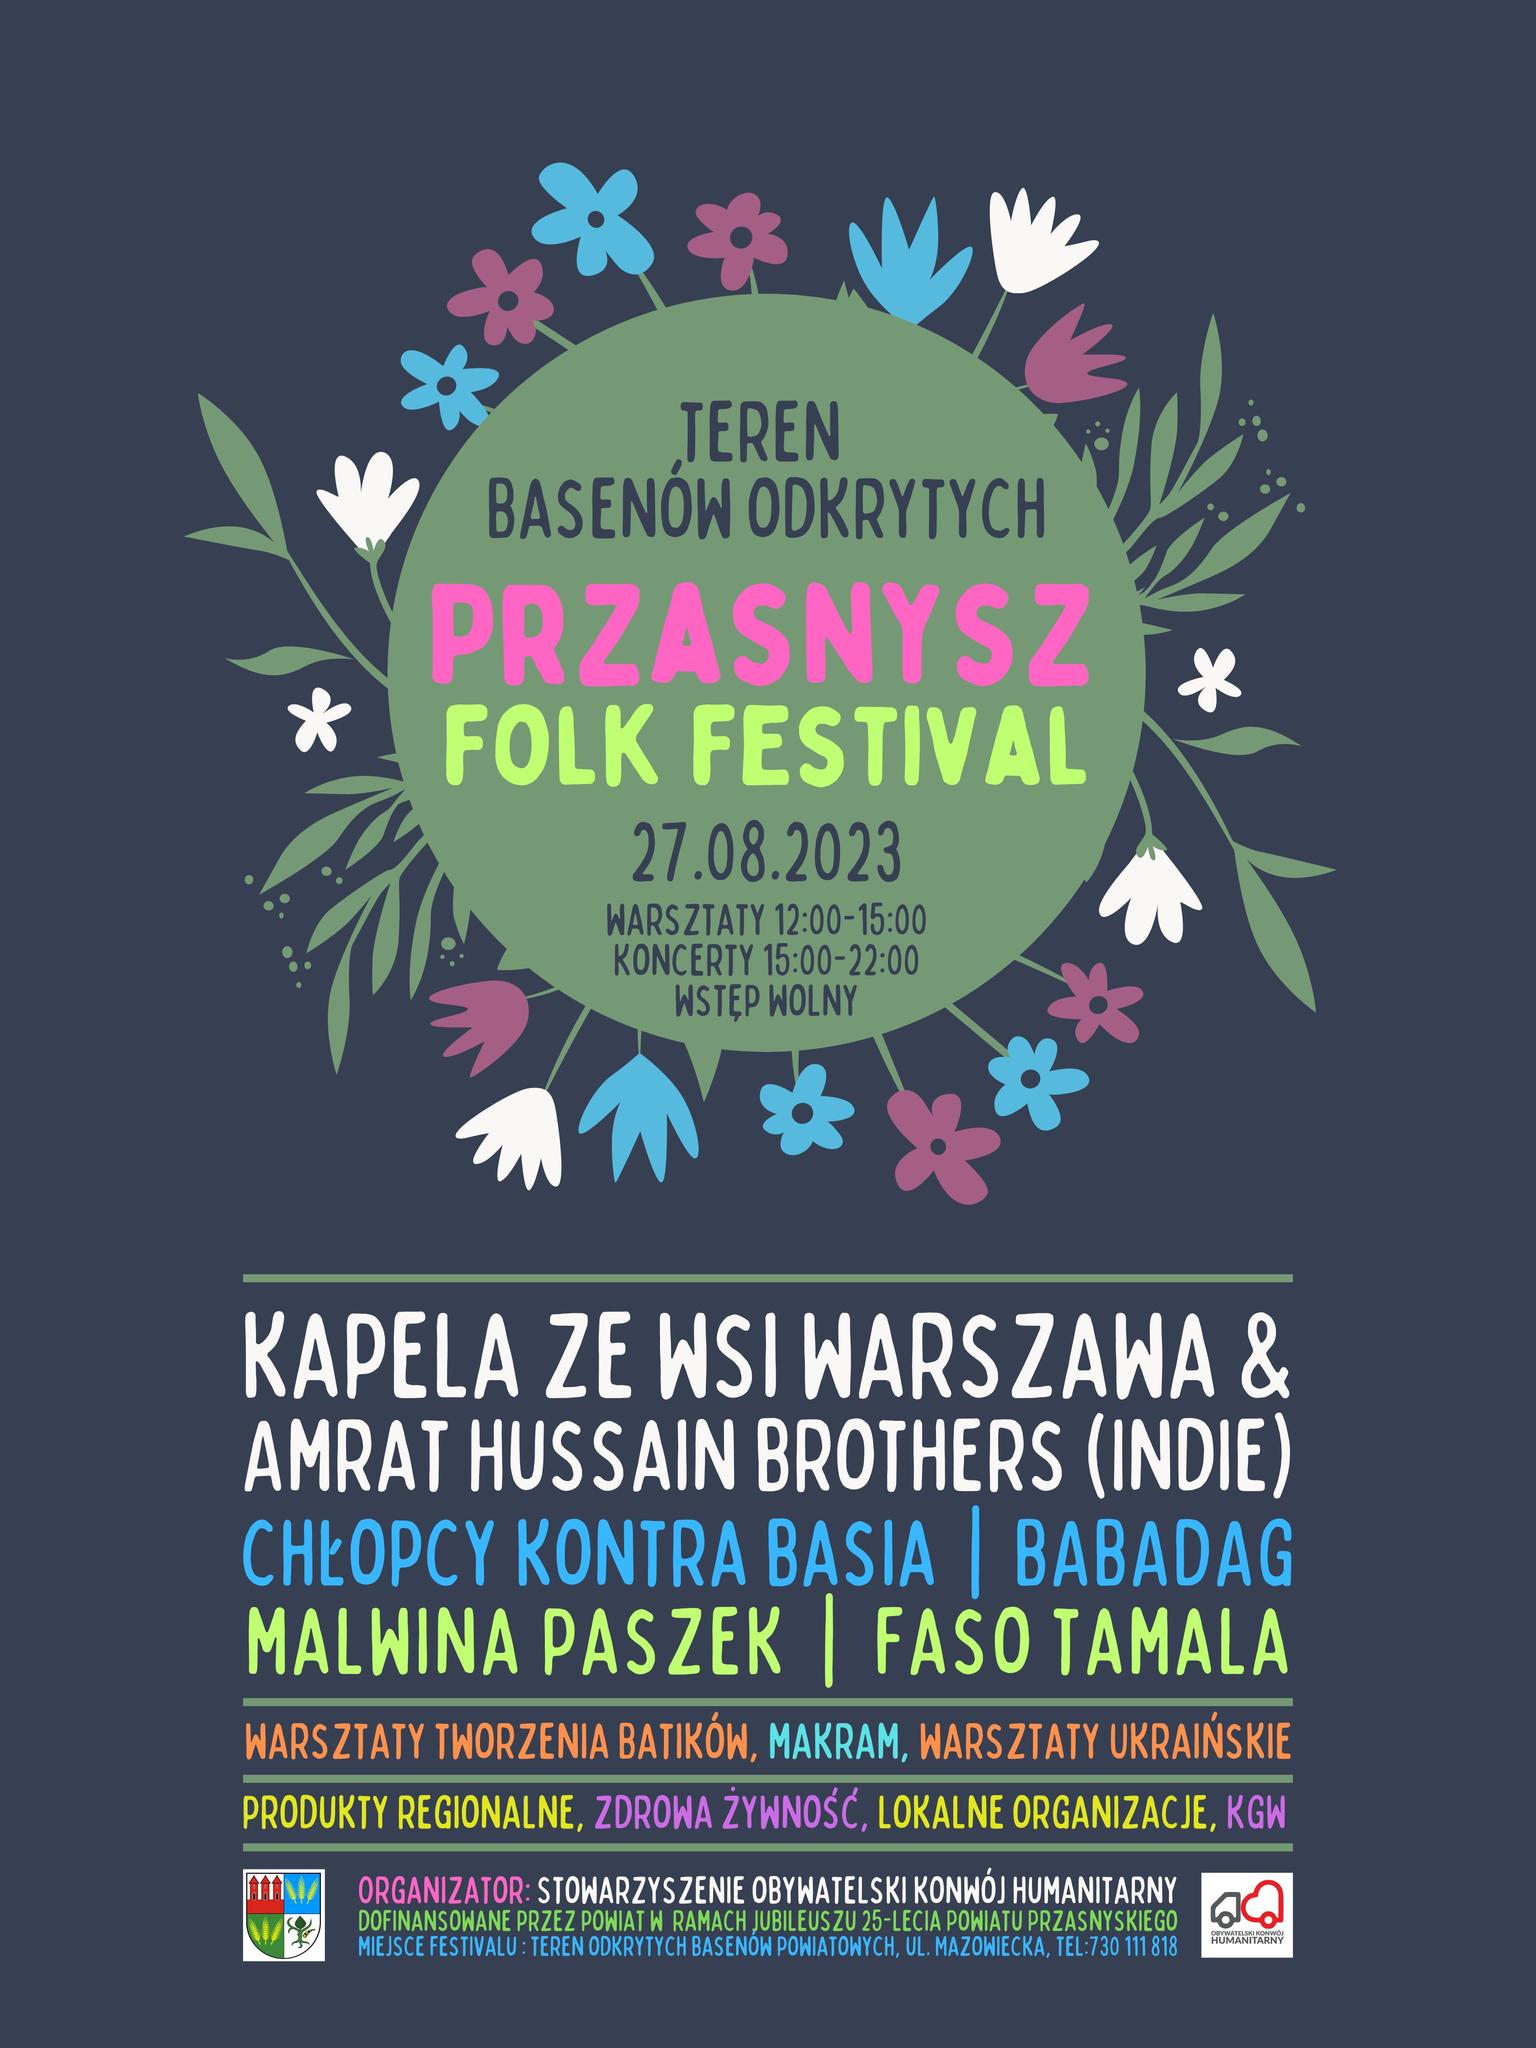 Plakat zapraszający do udziału Przasnysz Folk Festival. Treść w artykule.